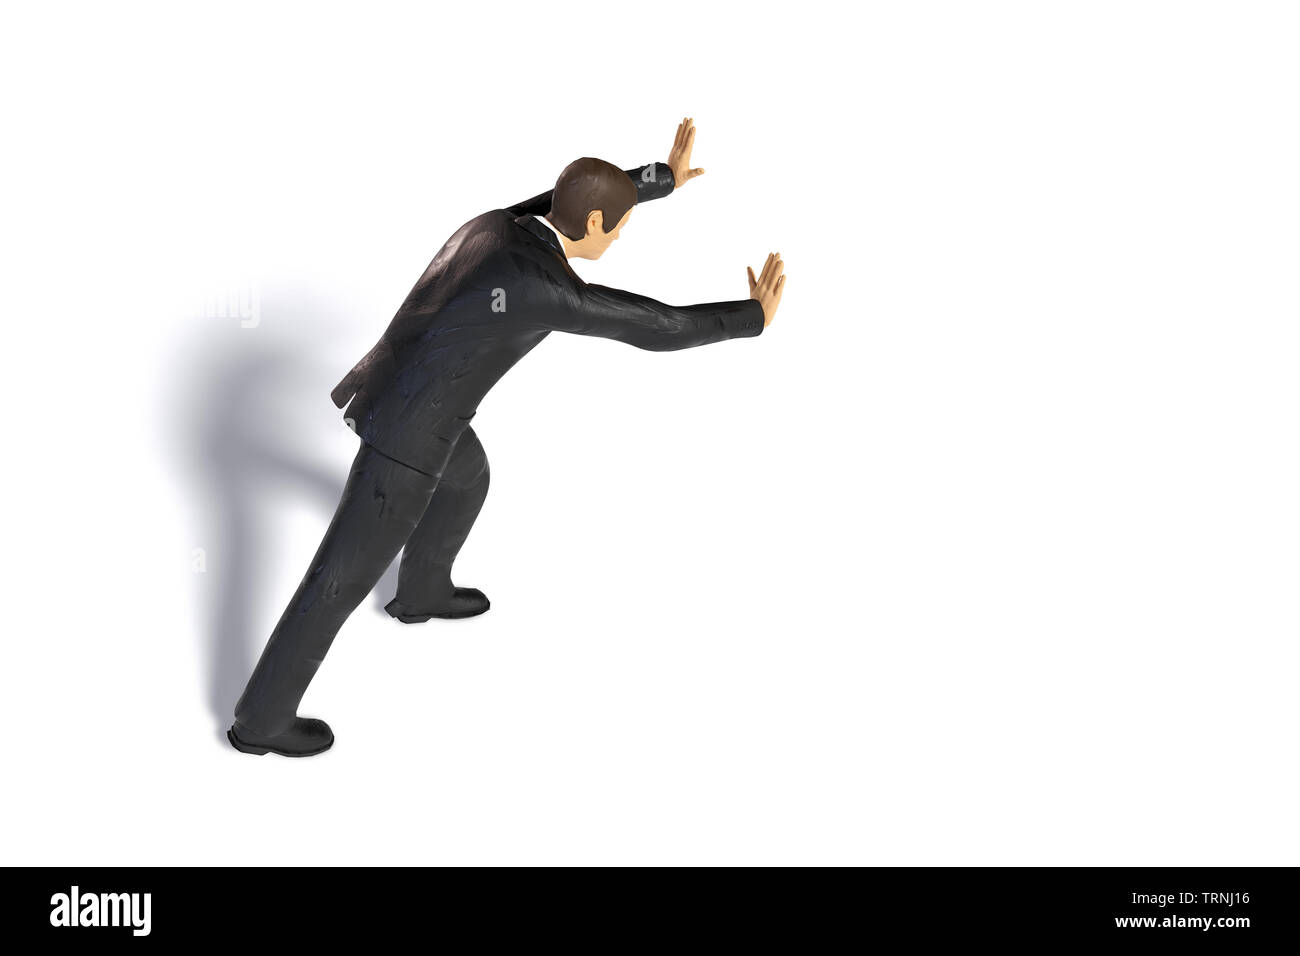 Giocattolo imprenditore in miniatura spingendo, statuetta concetto isolato con ombra su sfondo bianco Foto Stock